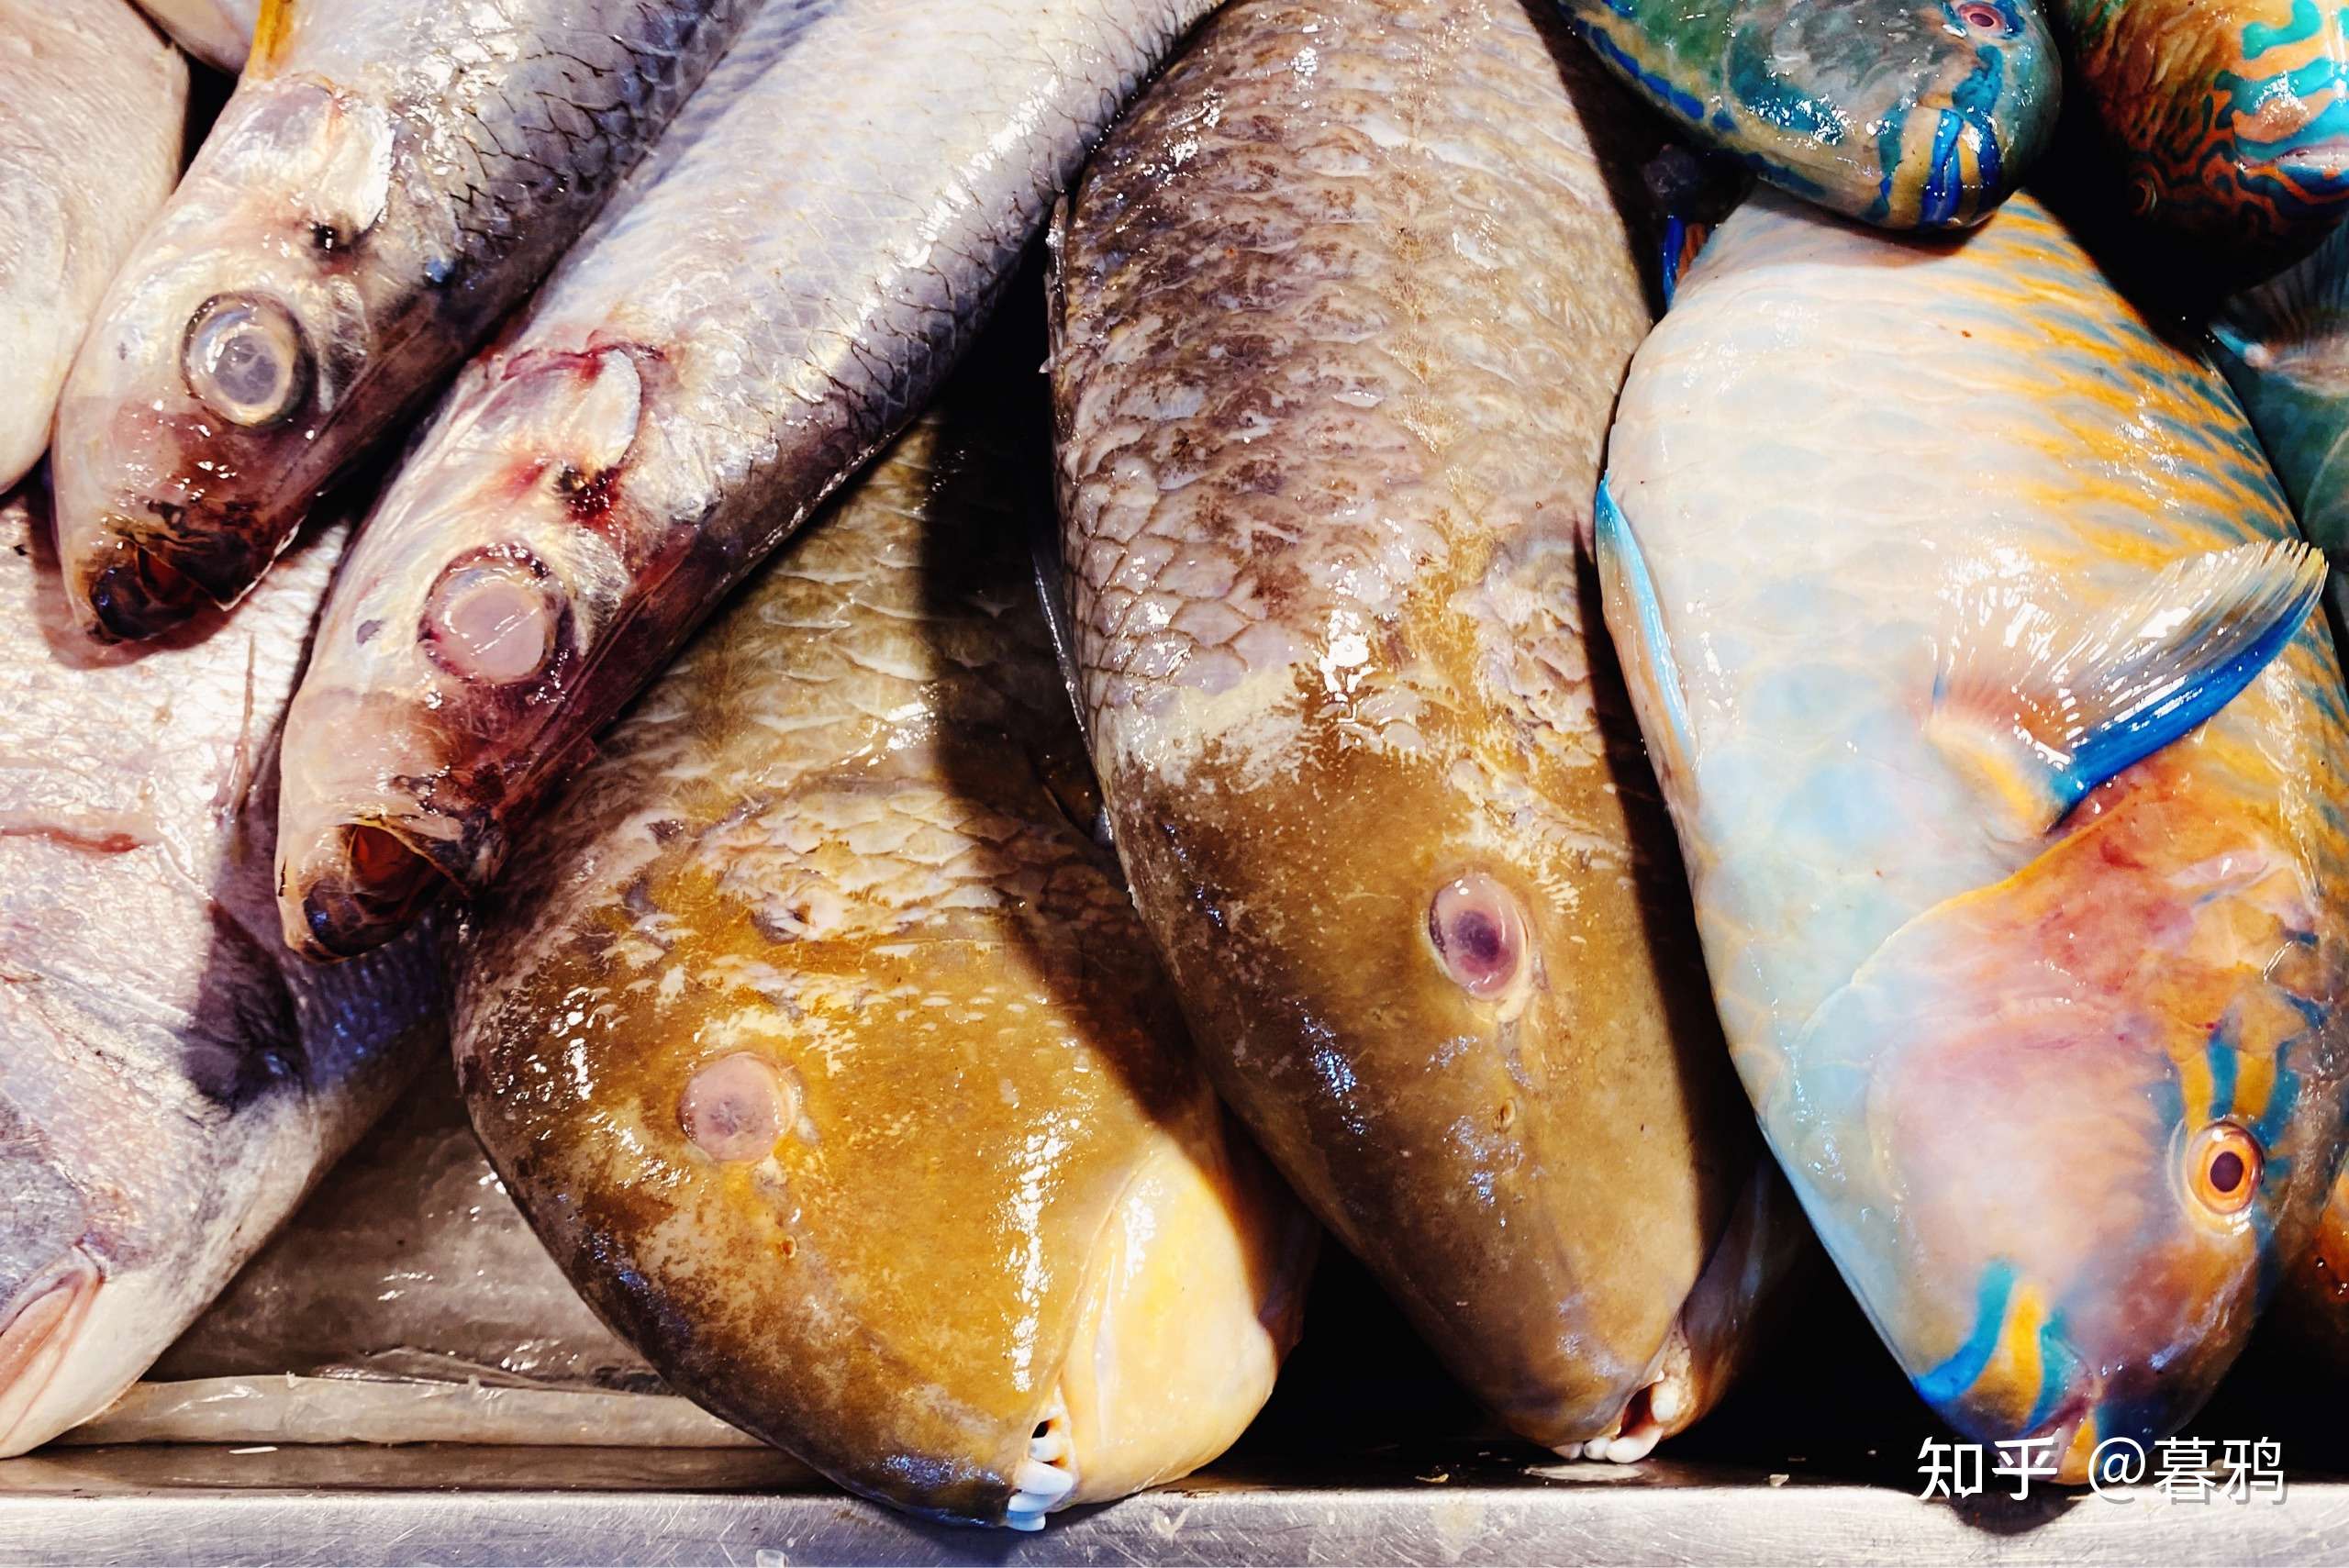 暮鸦 的想法: 海南菜市场鱼类 鹦嘴鱼猪齿鱼石斑笛鲷一… 